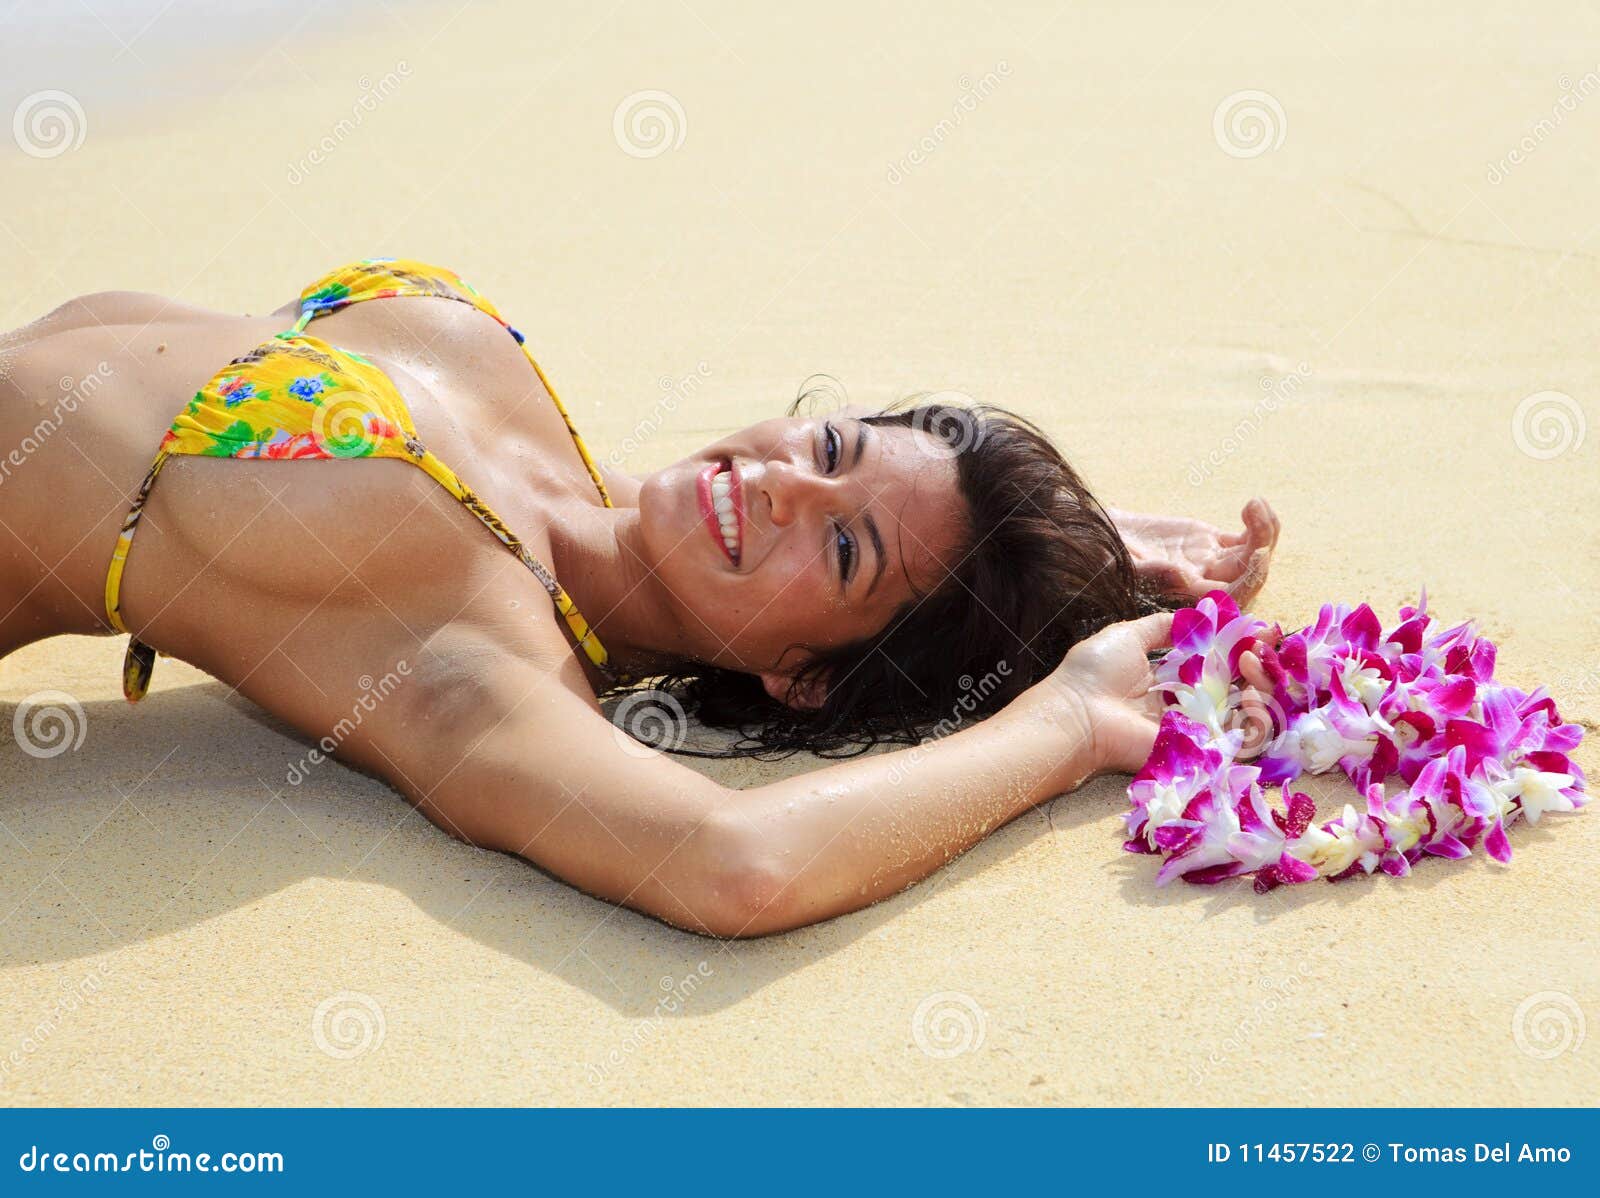 Beautiful Girl in a Yellow Bikini Stock Photo